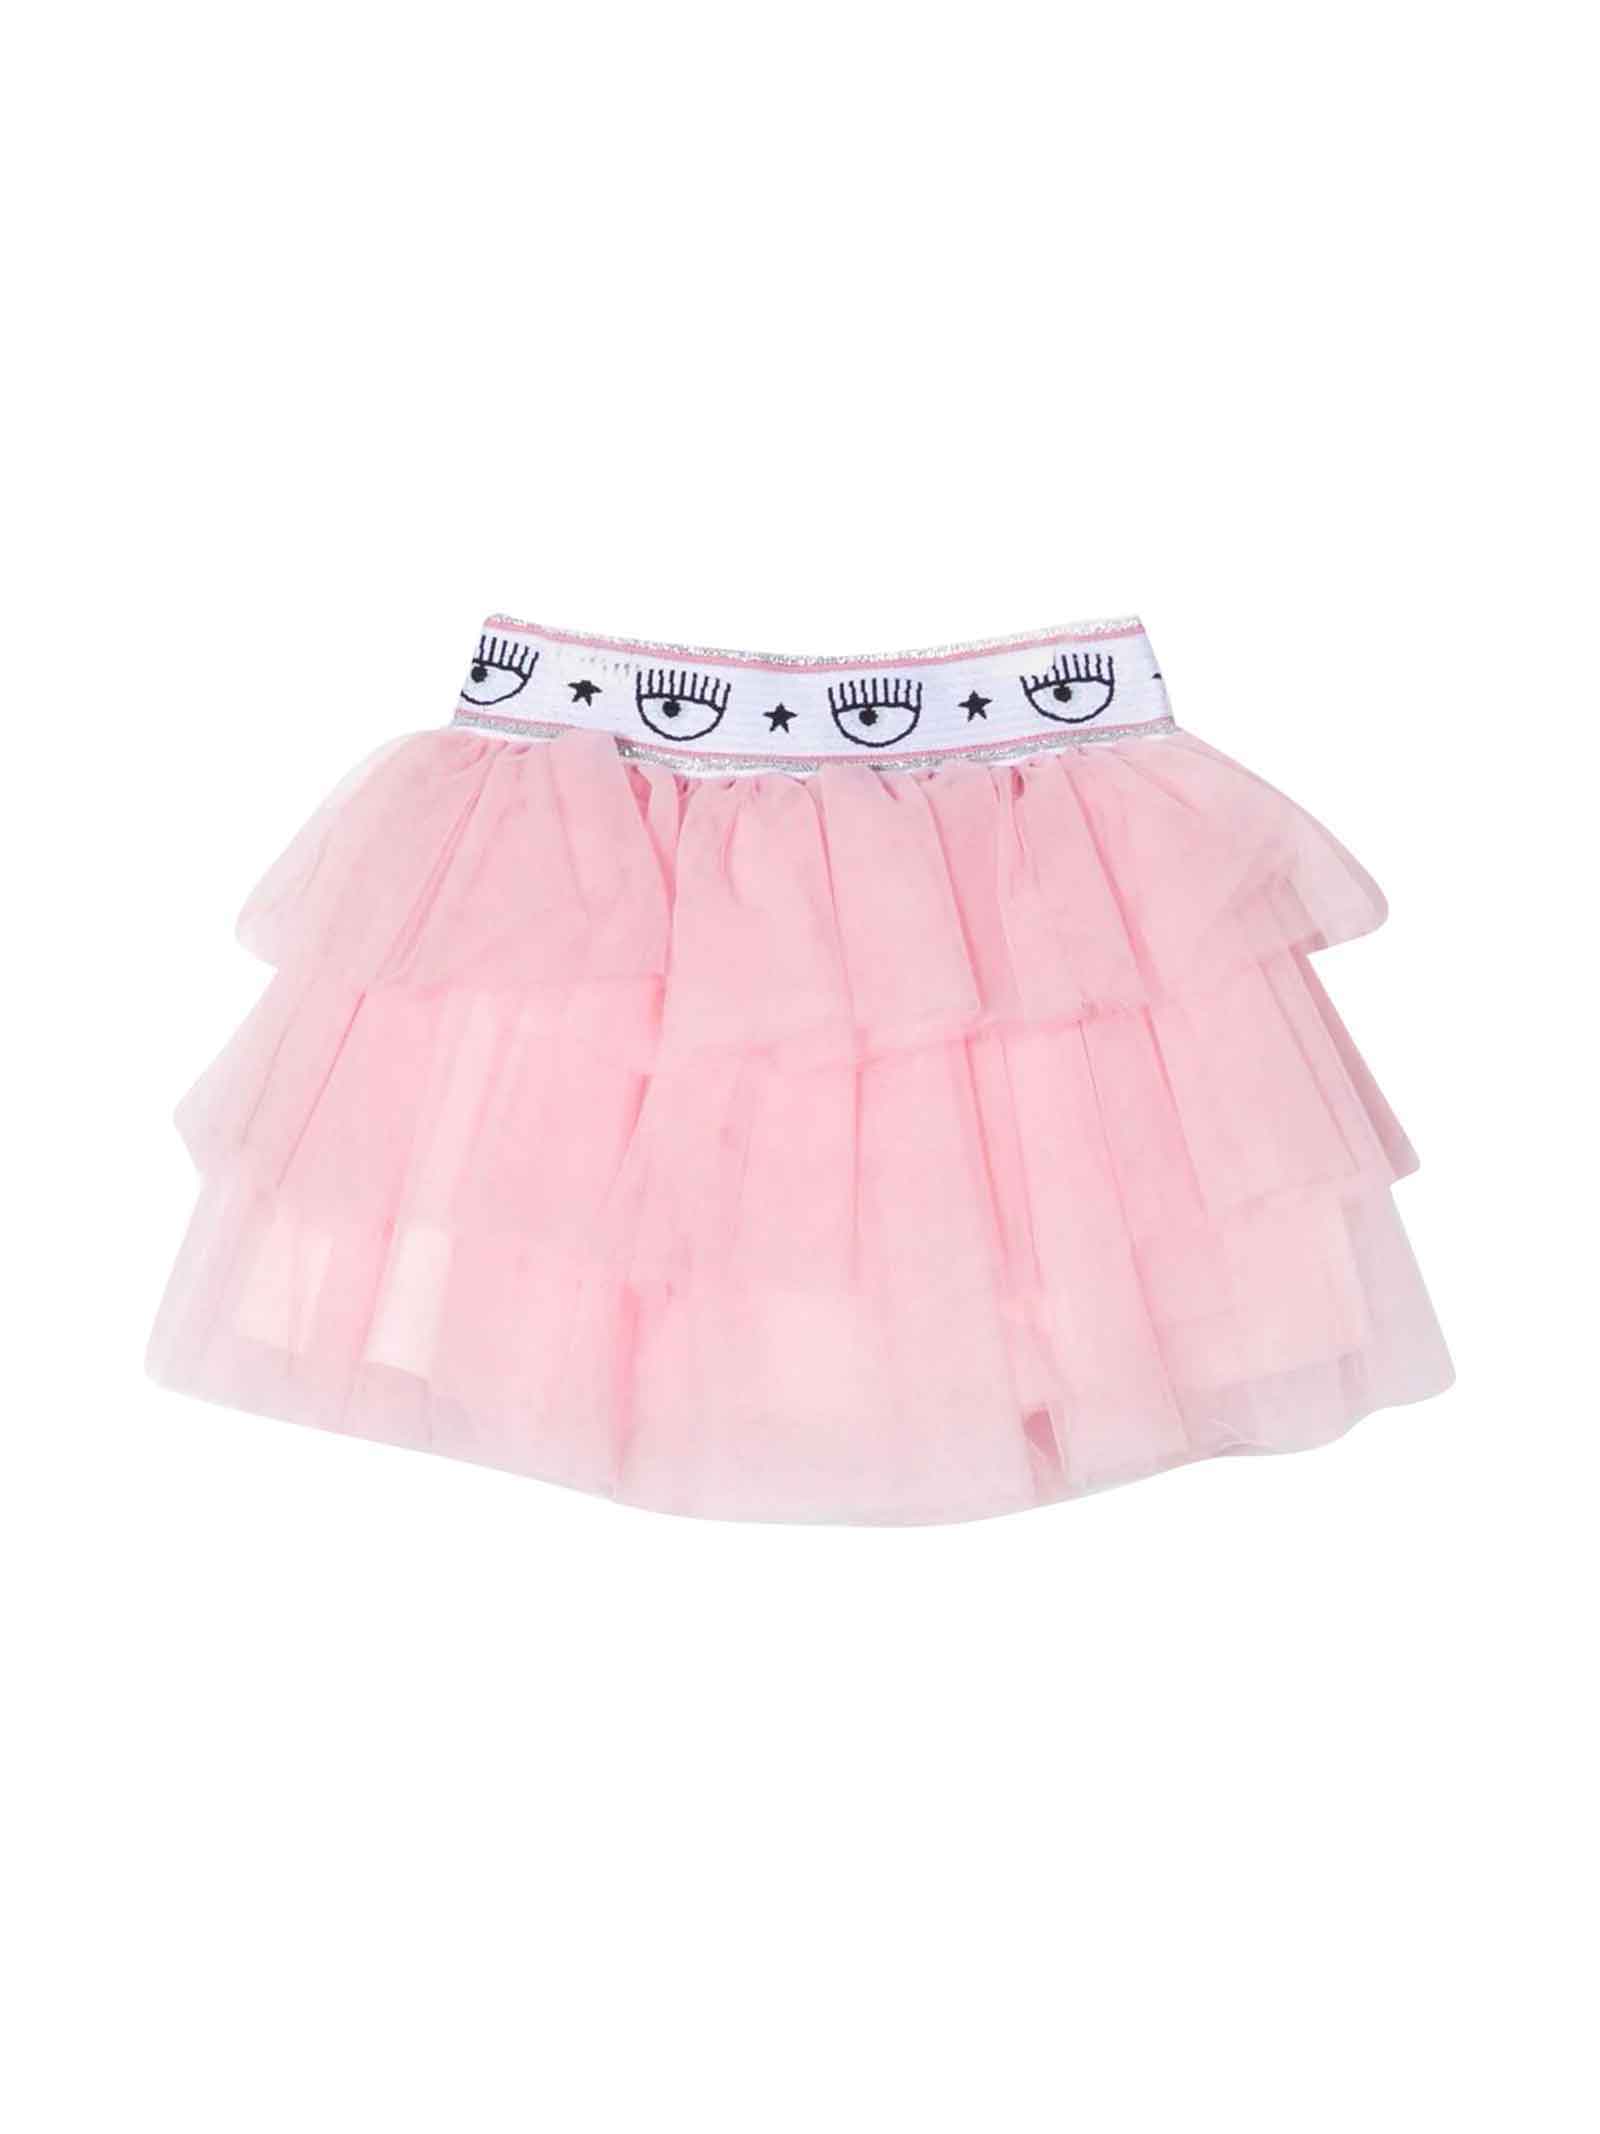 Chiara Ferragni Newborn Pink Skirt